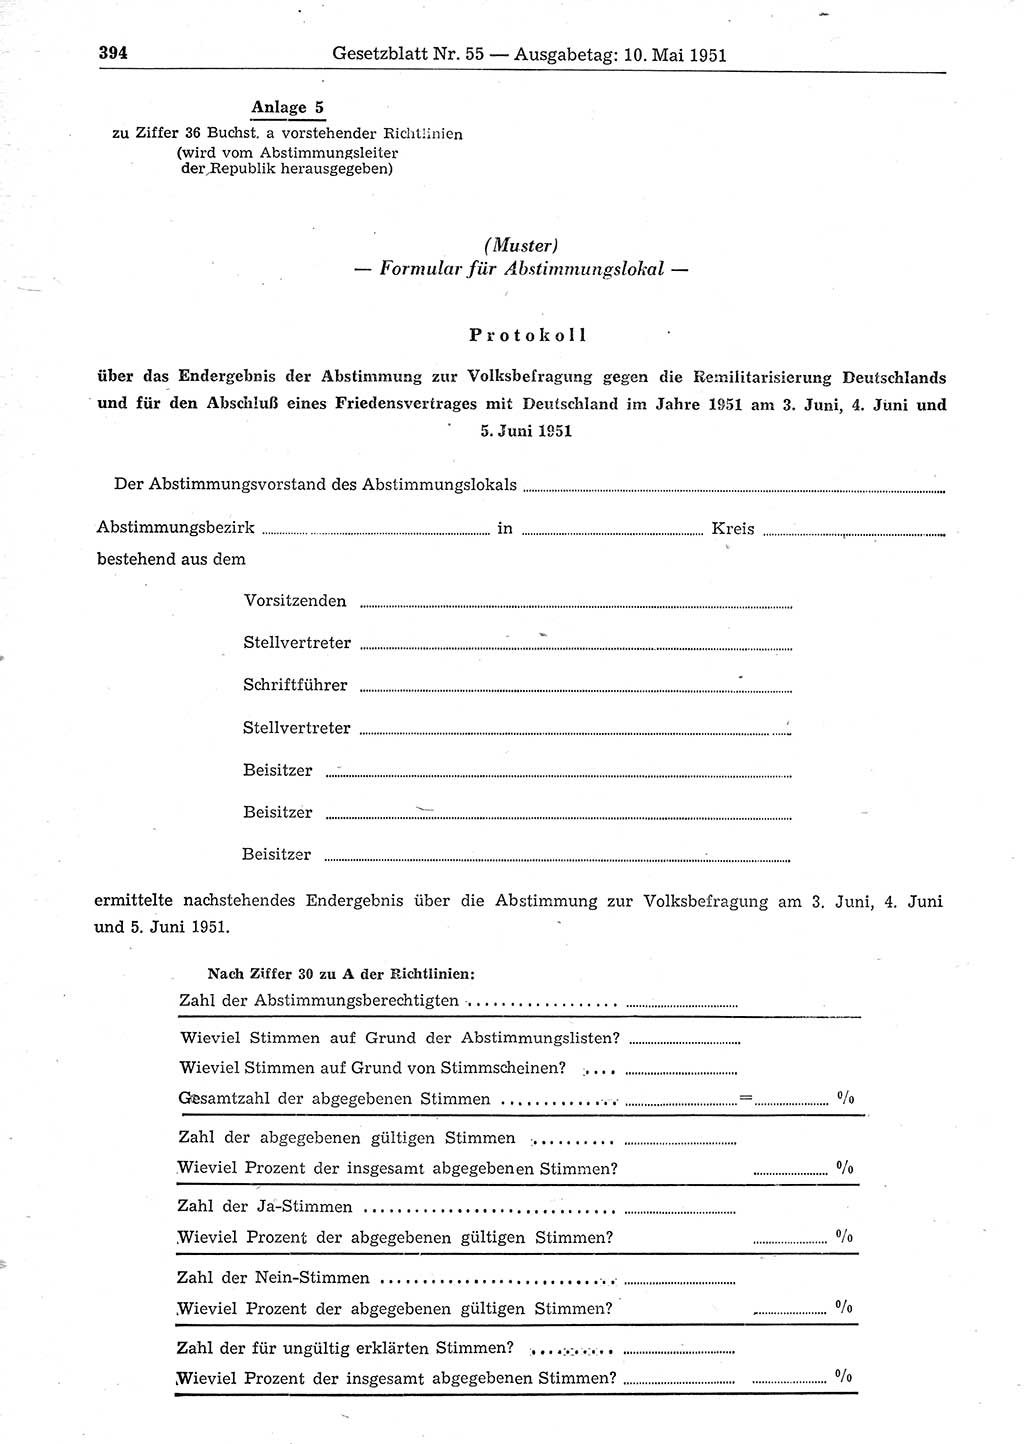 Gesetzblatt (GBl.) der Deutschen Demokratischen Republik (DDR) 1951, Seite 394 (GBl. DDR 1951, S. 394)